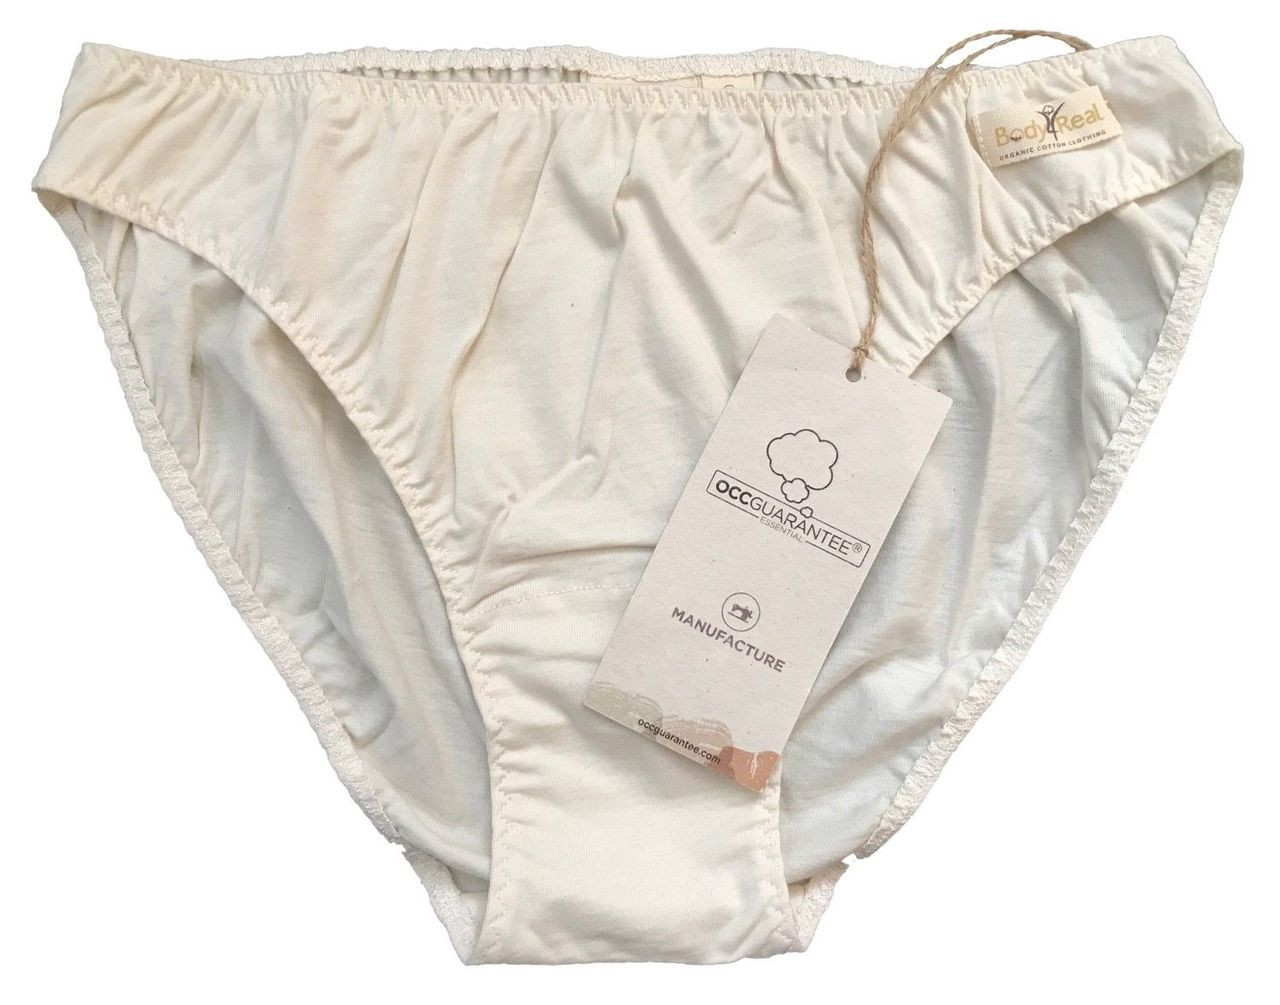 cotton underwear